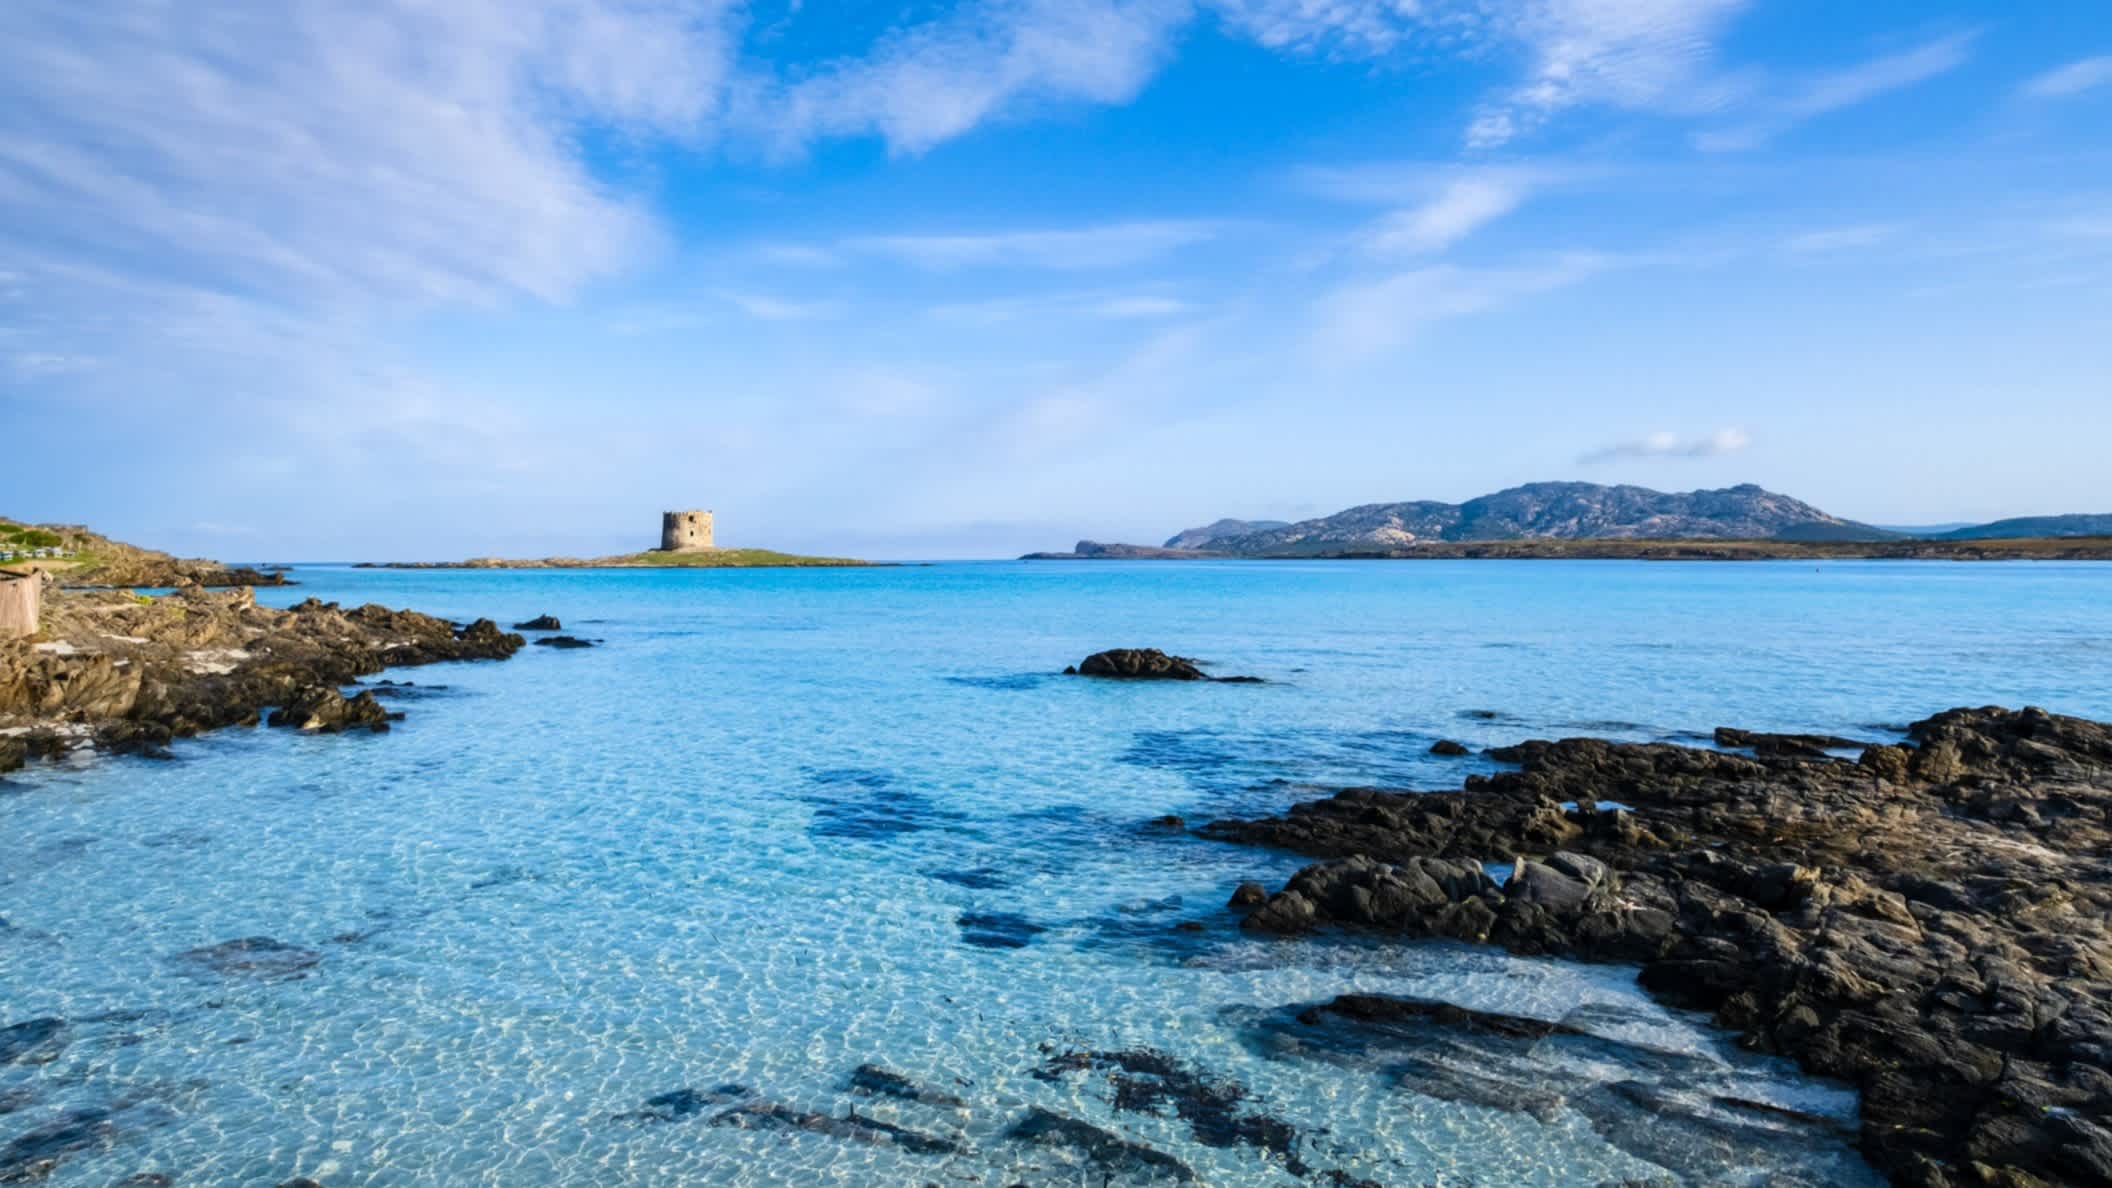 Blick vom Strand La Pelosa, Sardinien, Italien auf das Meer mit einer vorgelagerten Insel sowie einer Festung.